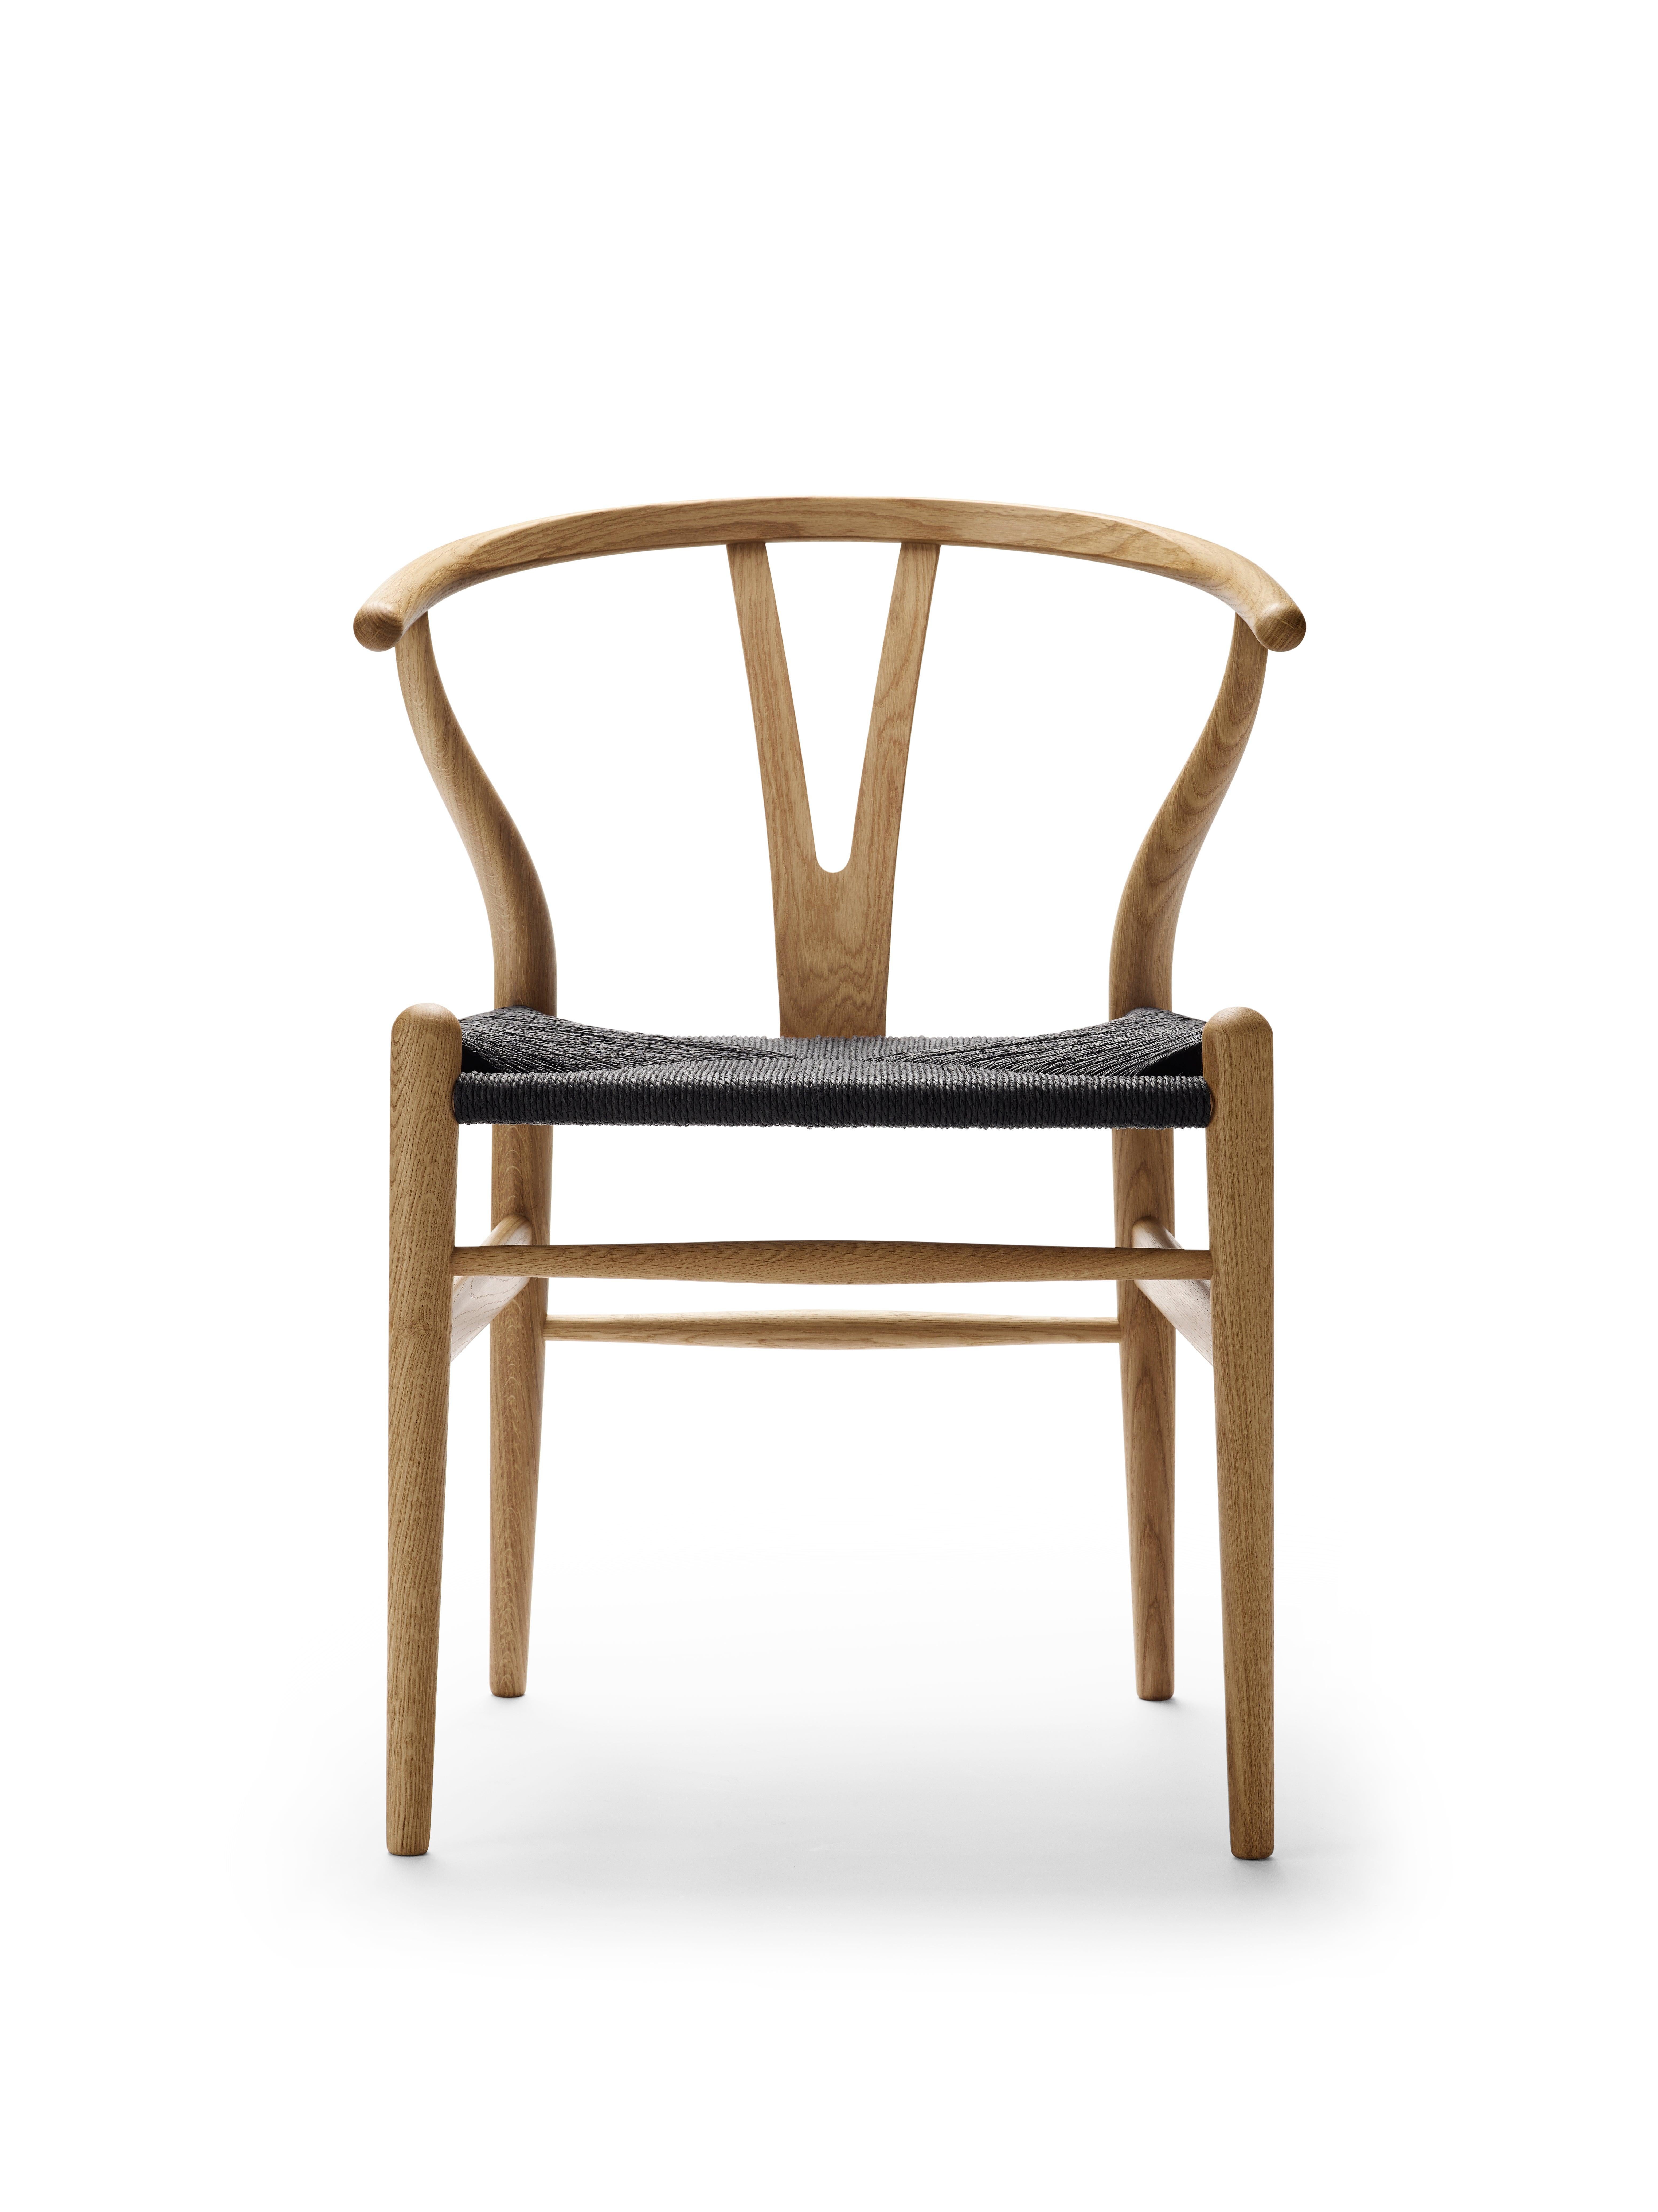 Avec une forme qui lui est propre, l'emblématique chaise CH24 Wishbone de Hans J. Wegner occupe une place particulière dans le monde du design moderne. Lors de la conception de la CH24, Wegner a choisi de combiner le dossier et l'accoudoir en une